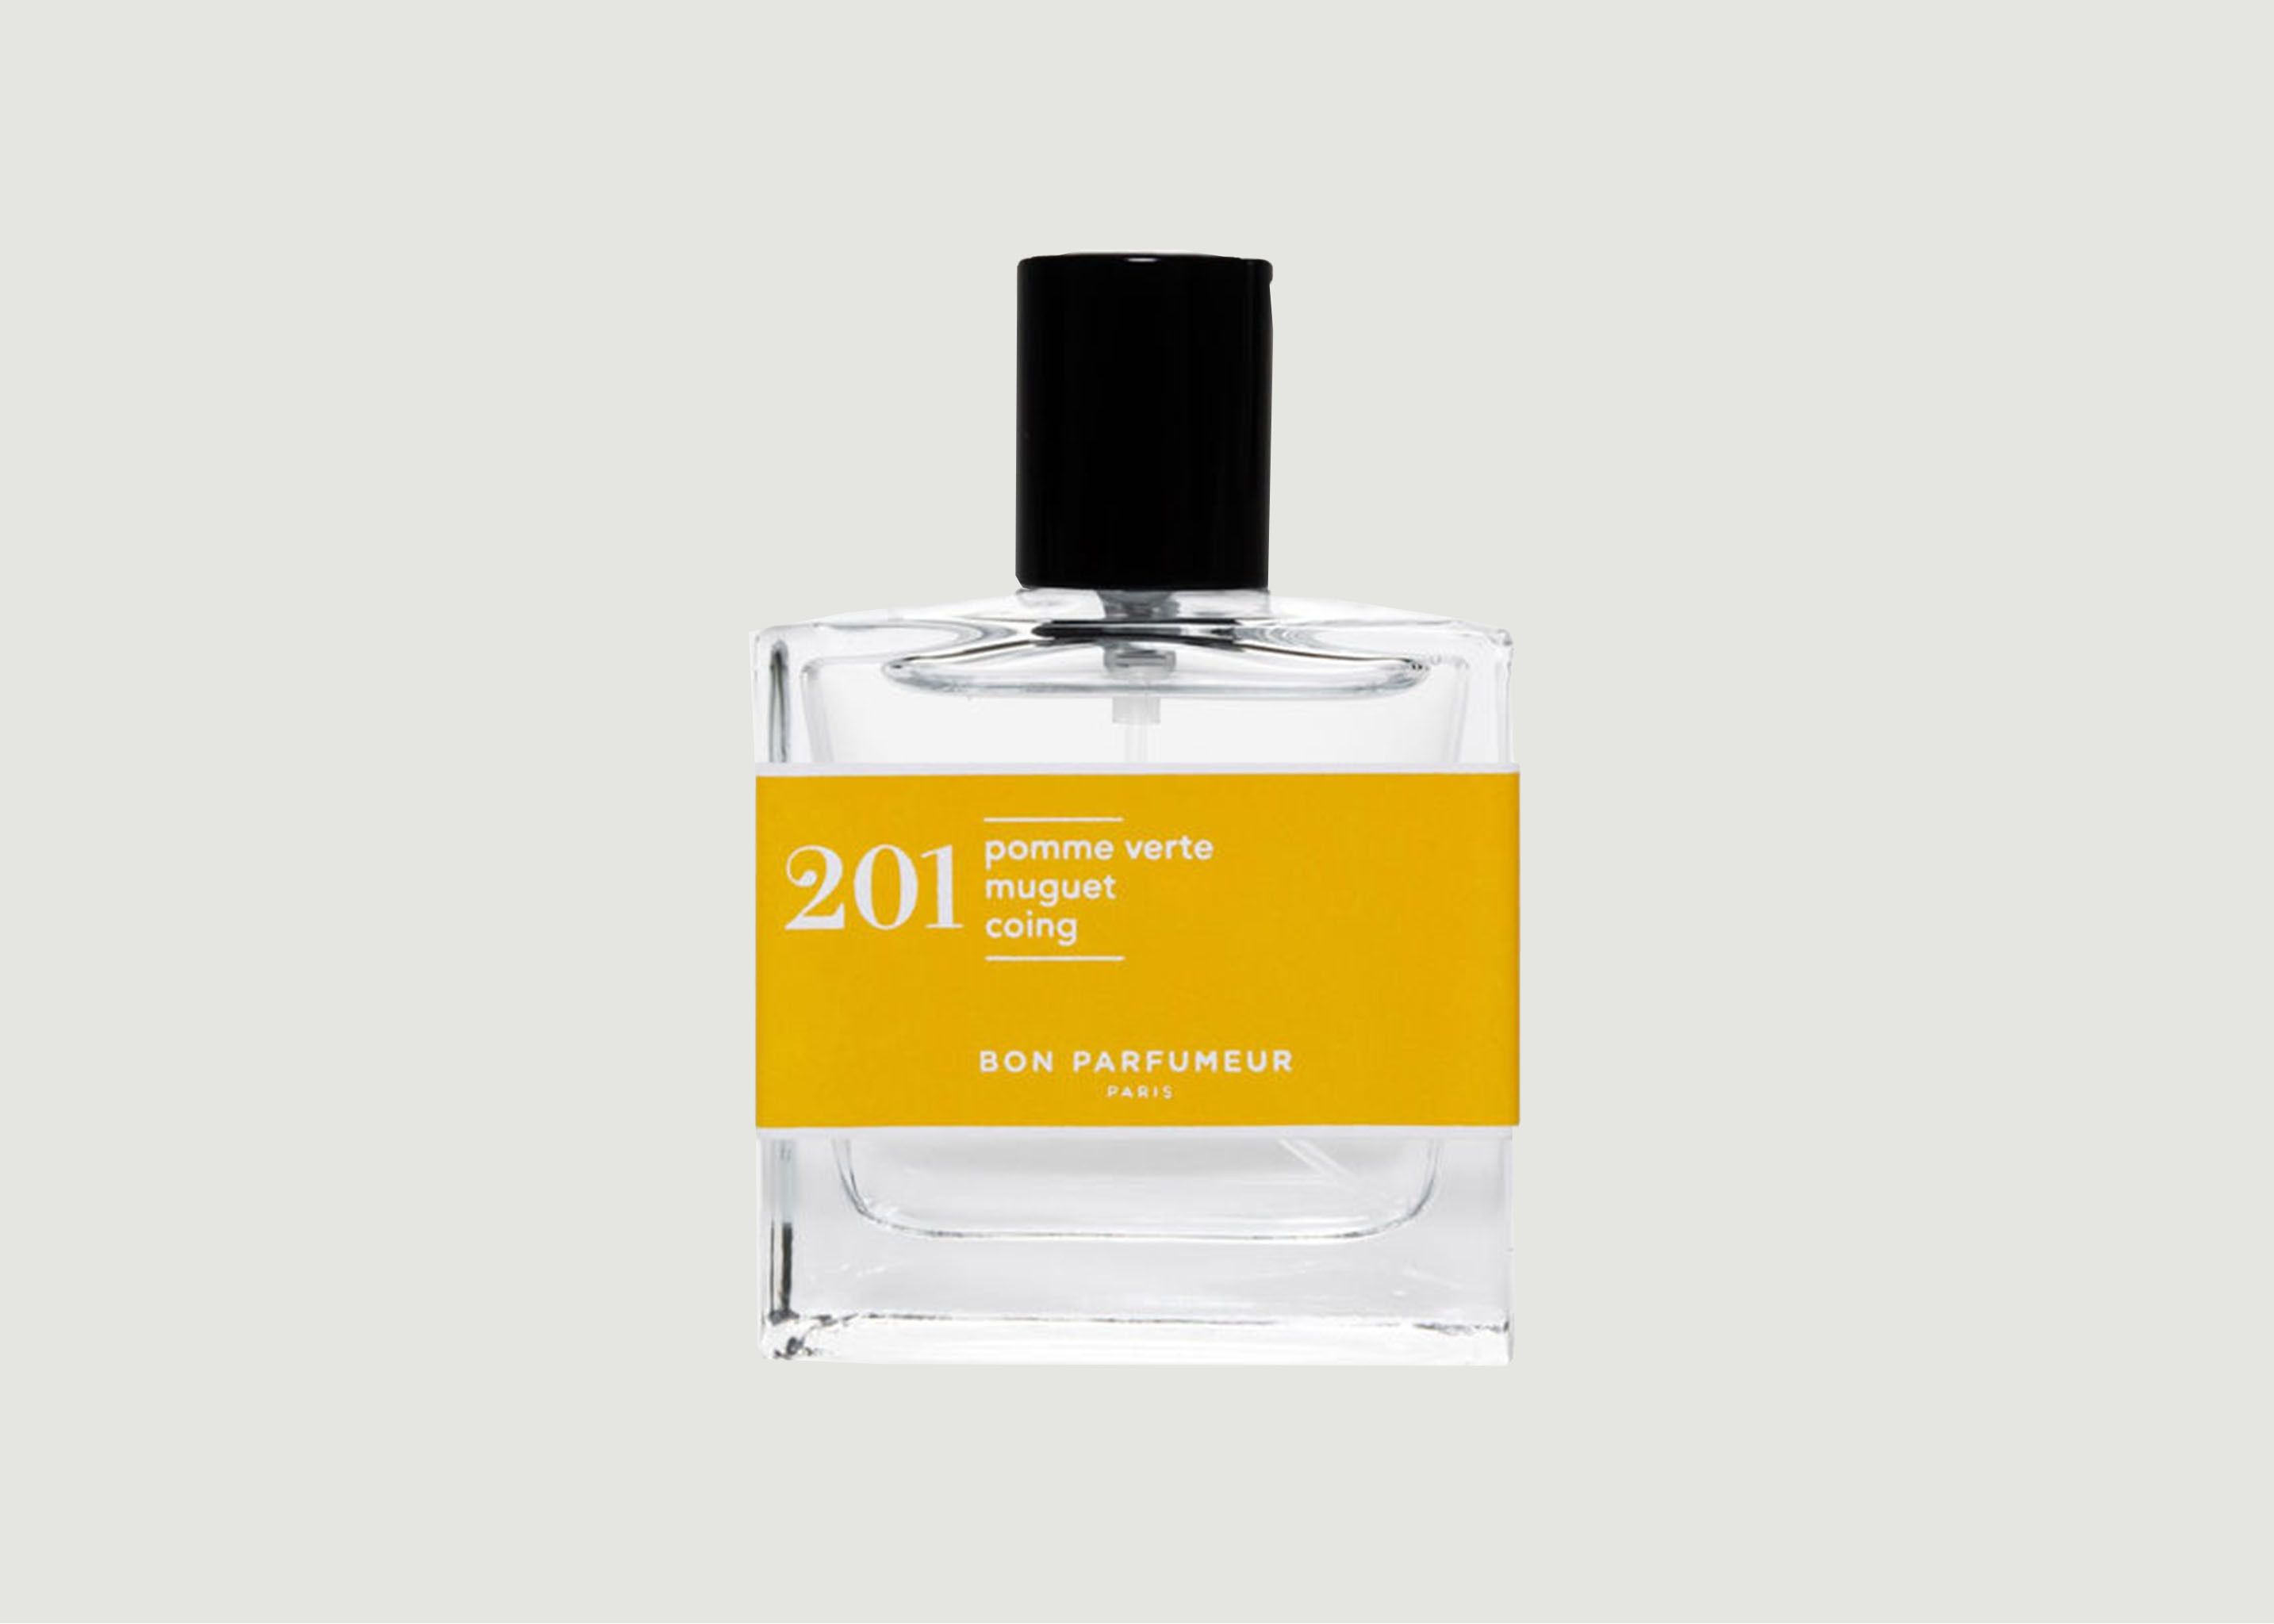 Eau de Parfum 201 : Pomme verte, Muguet, Coing - Bon Parfumeur